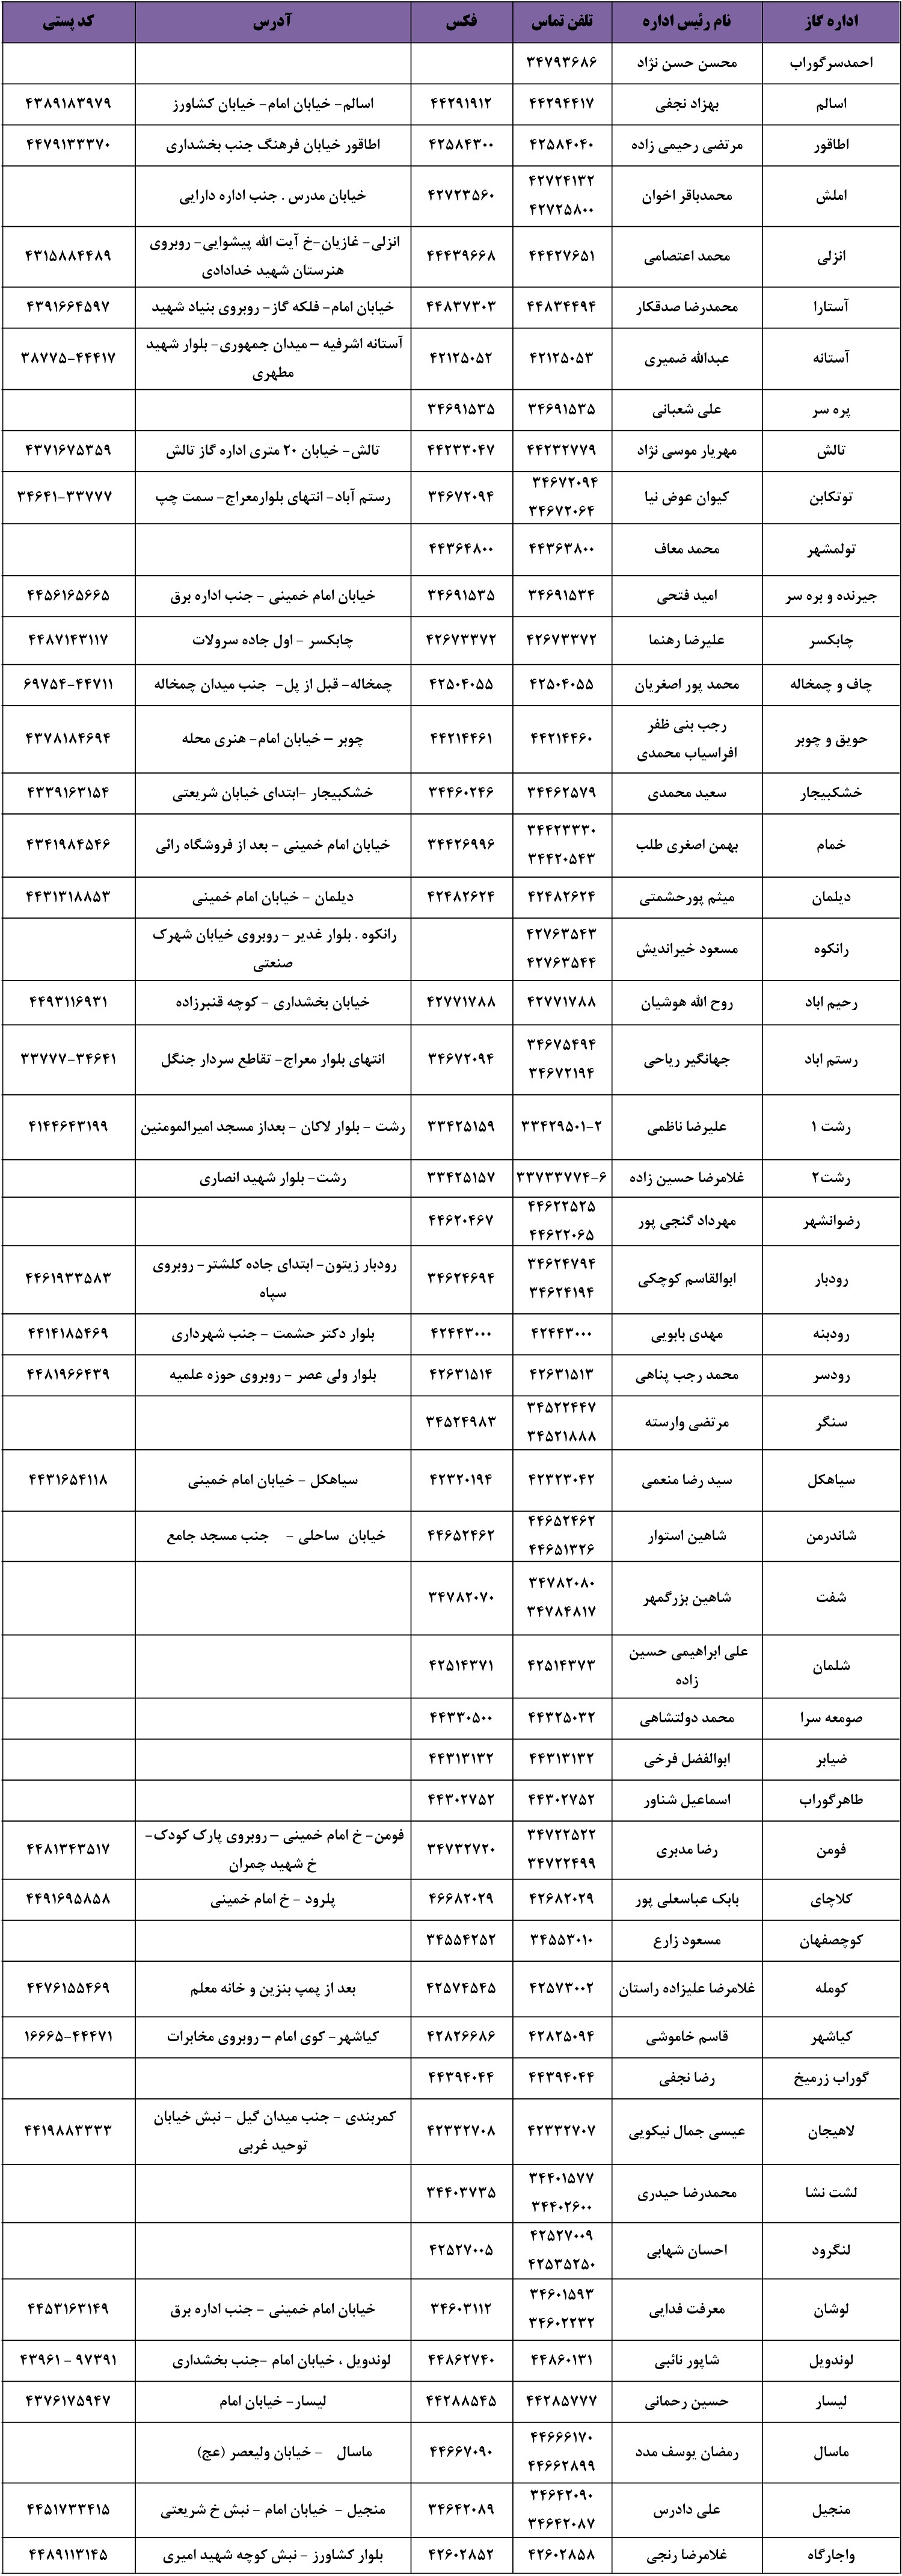 اطلاعات ادارات گاز شهرستان ها